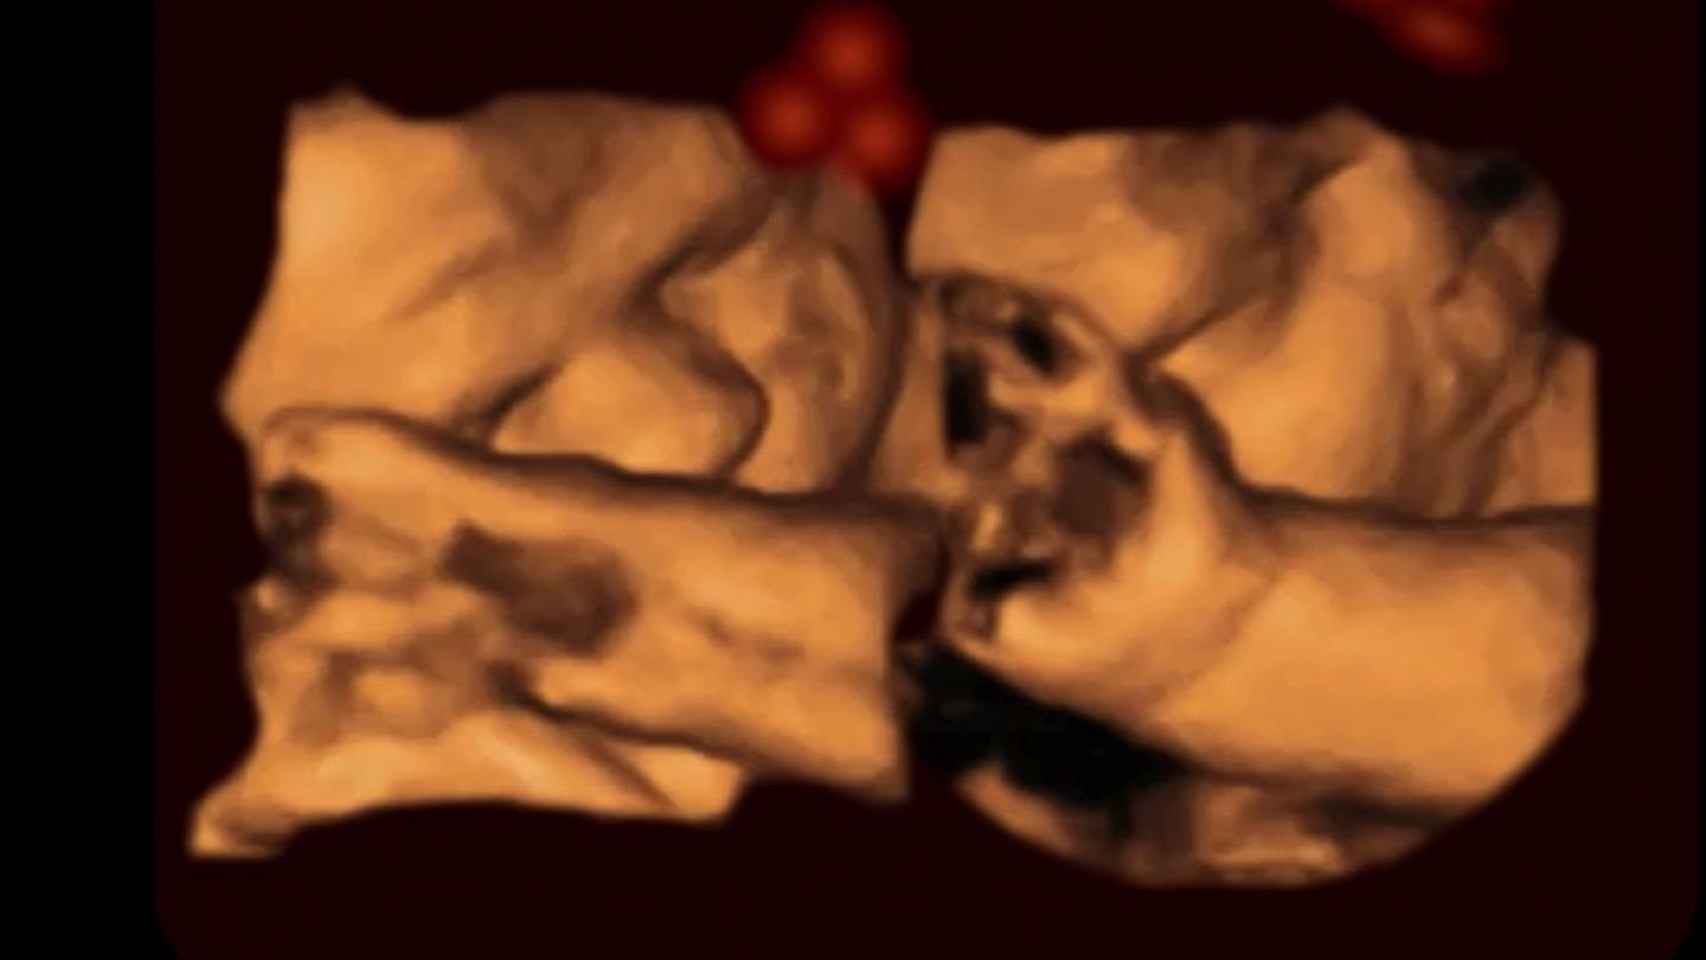 Los fetos reaccionan igual que los bebés al ver caras humanas